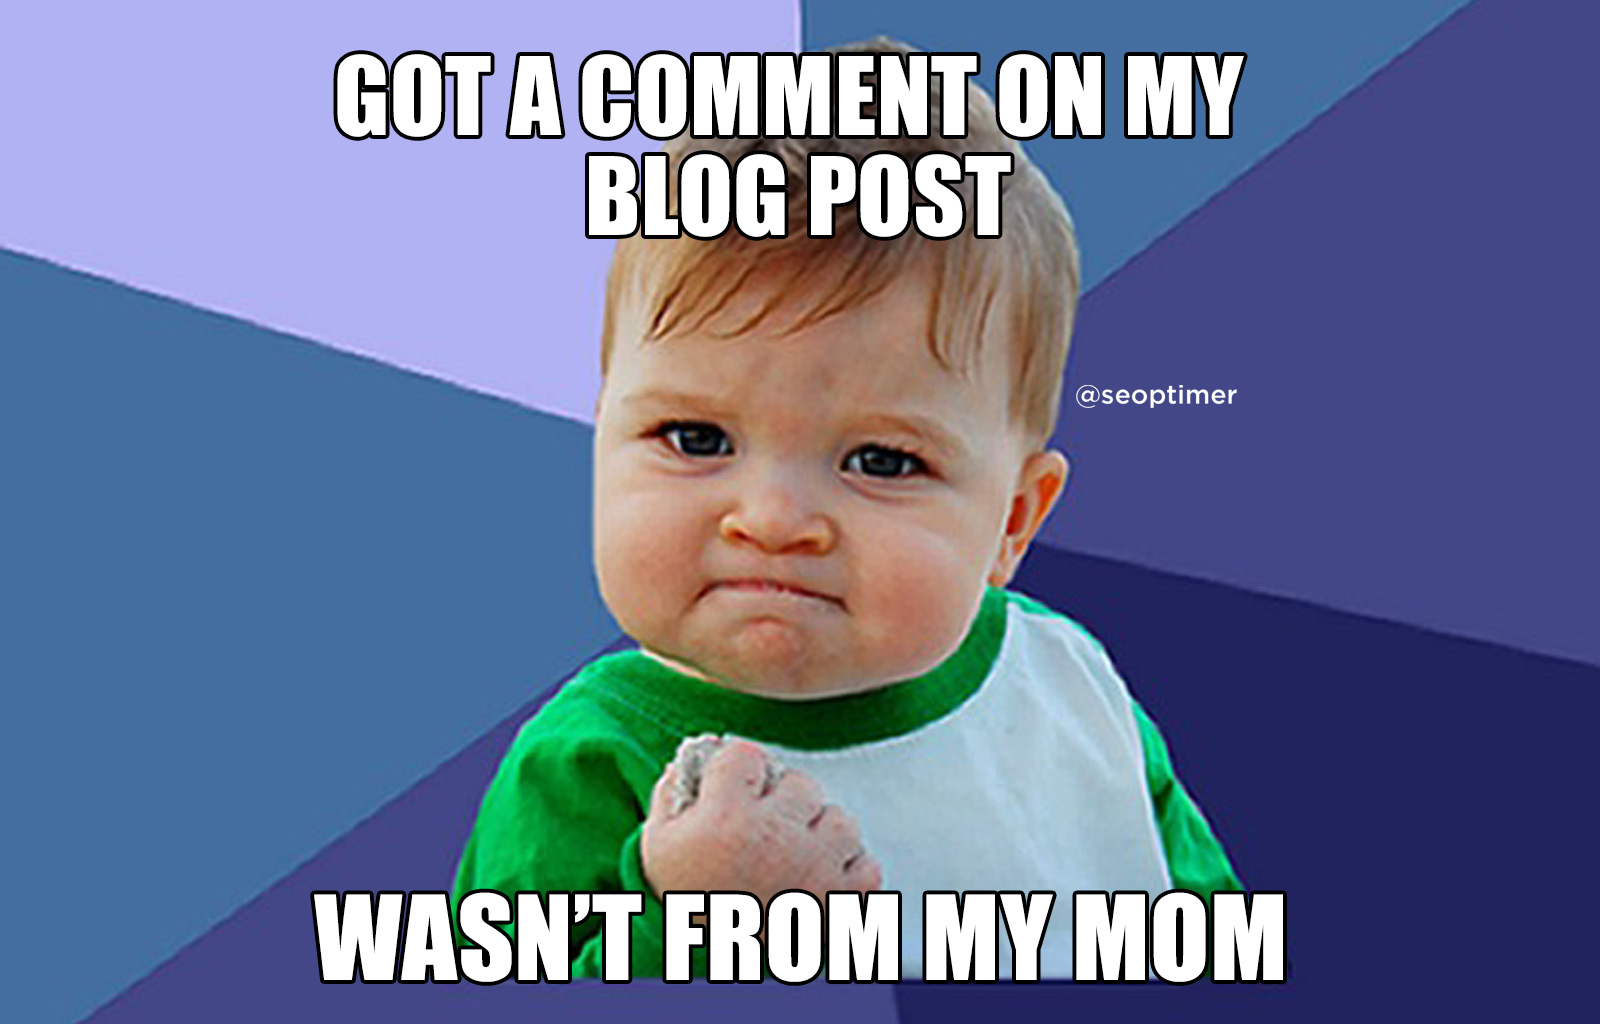 Kommentar zum Blog